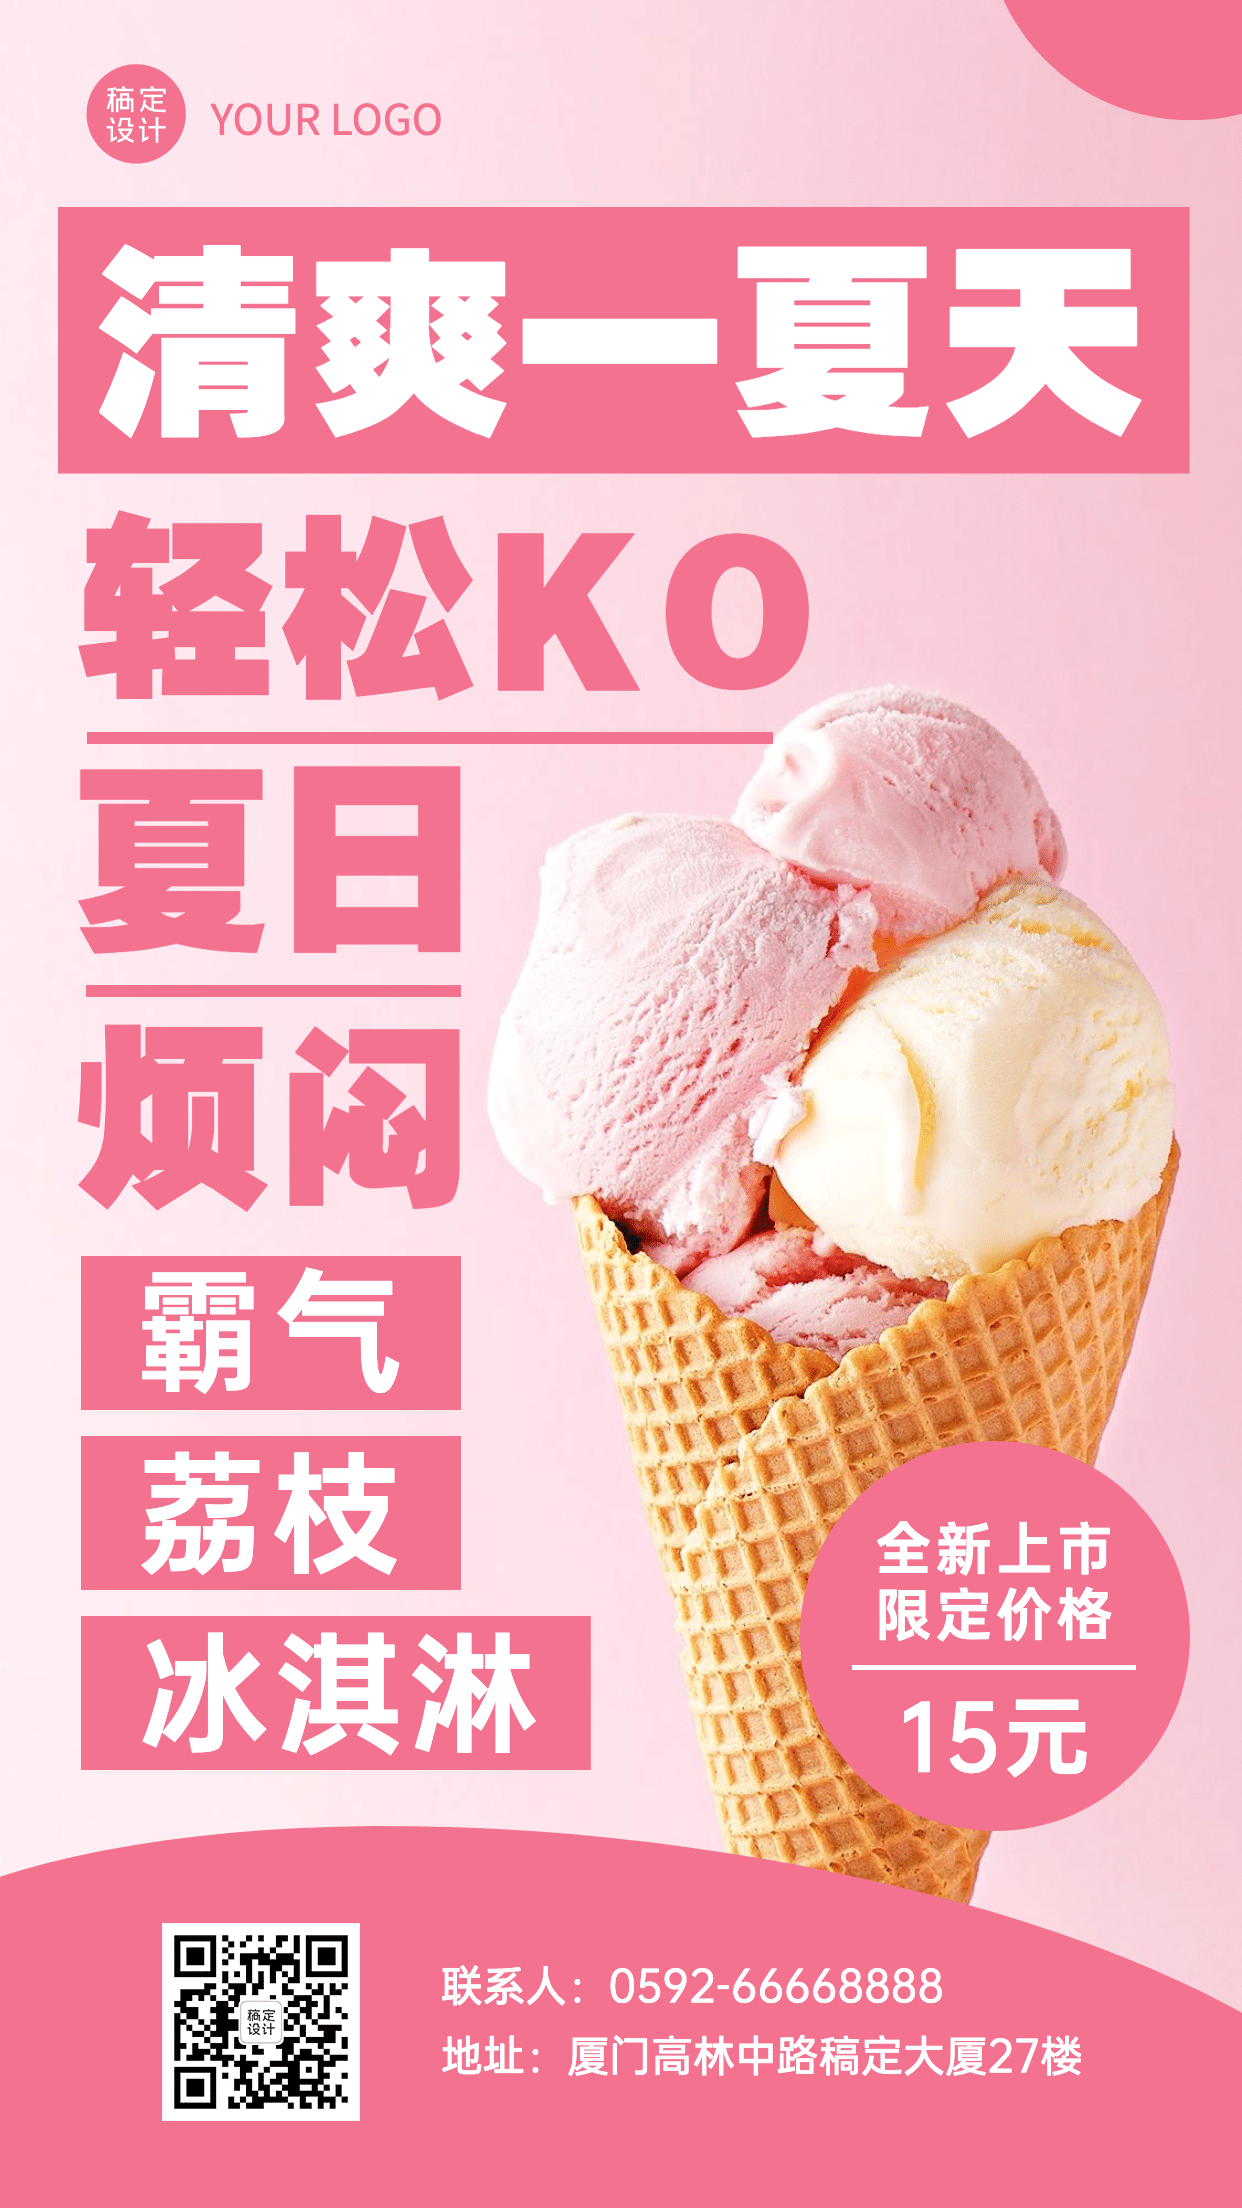 冰淇淋新品上市实景风海报预览效果